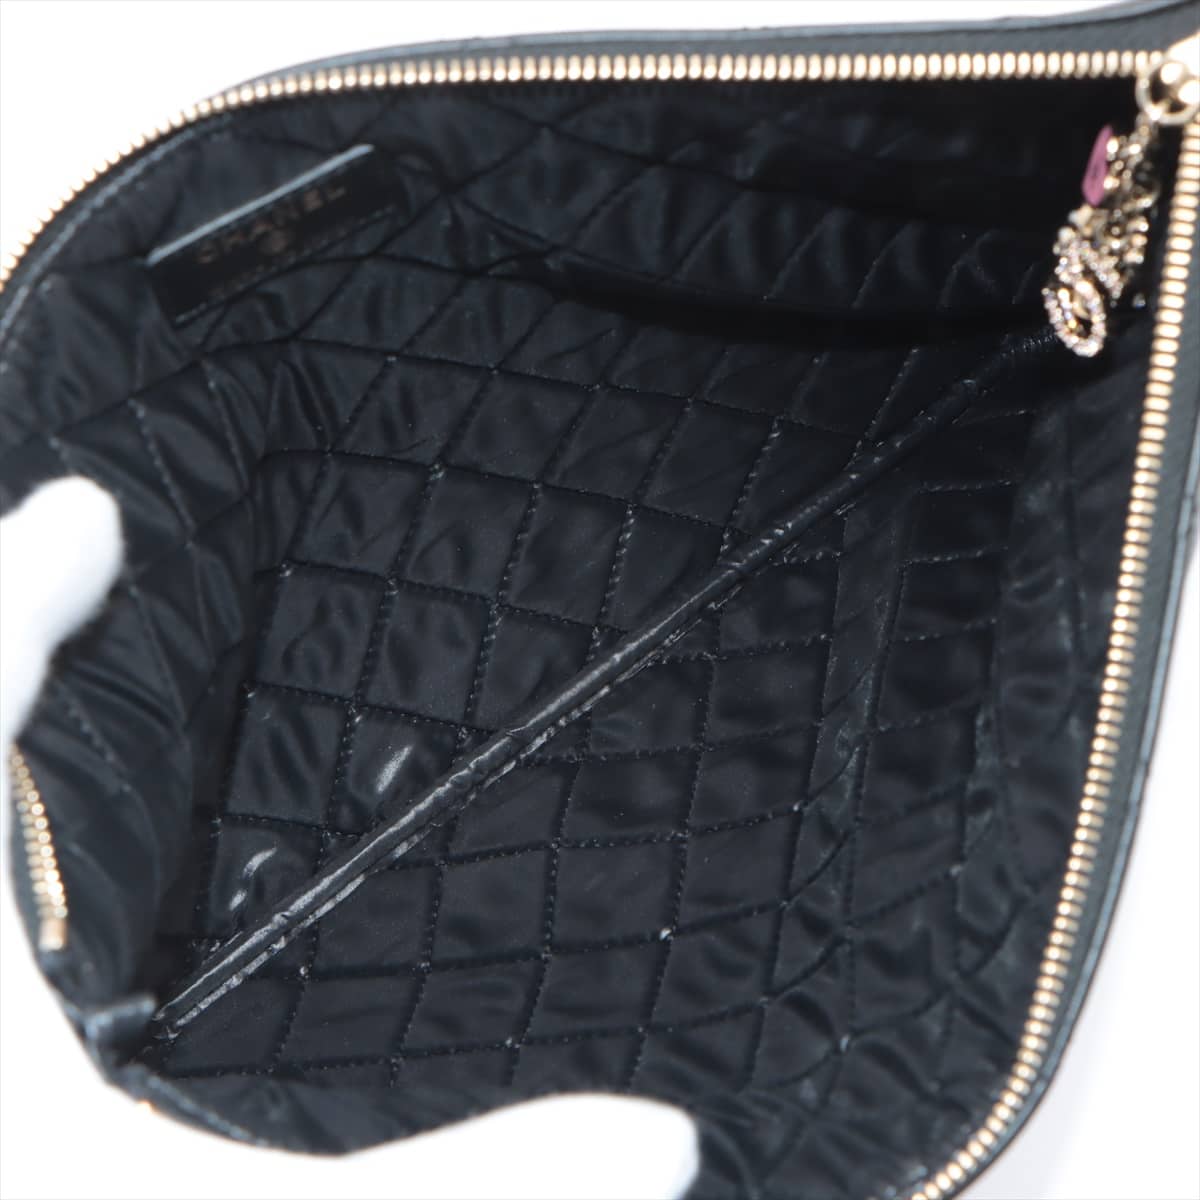 Chanel Matelasse Lambskin Clutch bag Black Champagne gold hardware 22XXXXXX